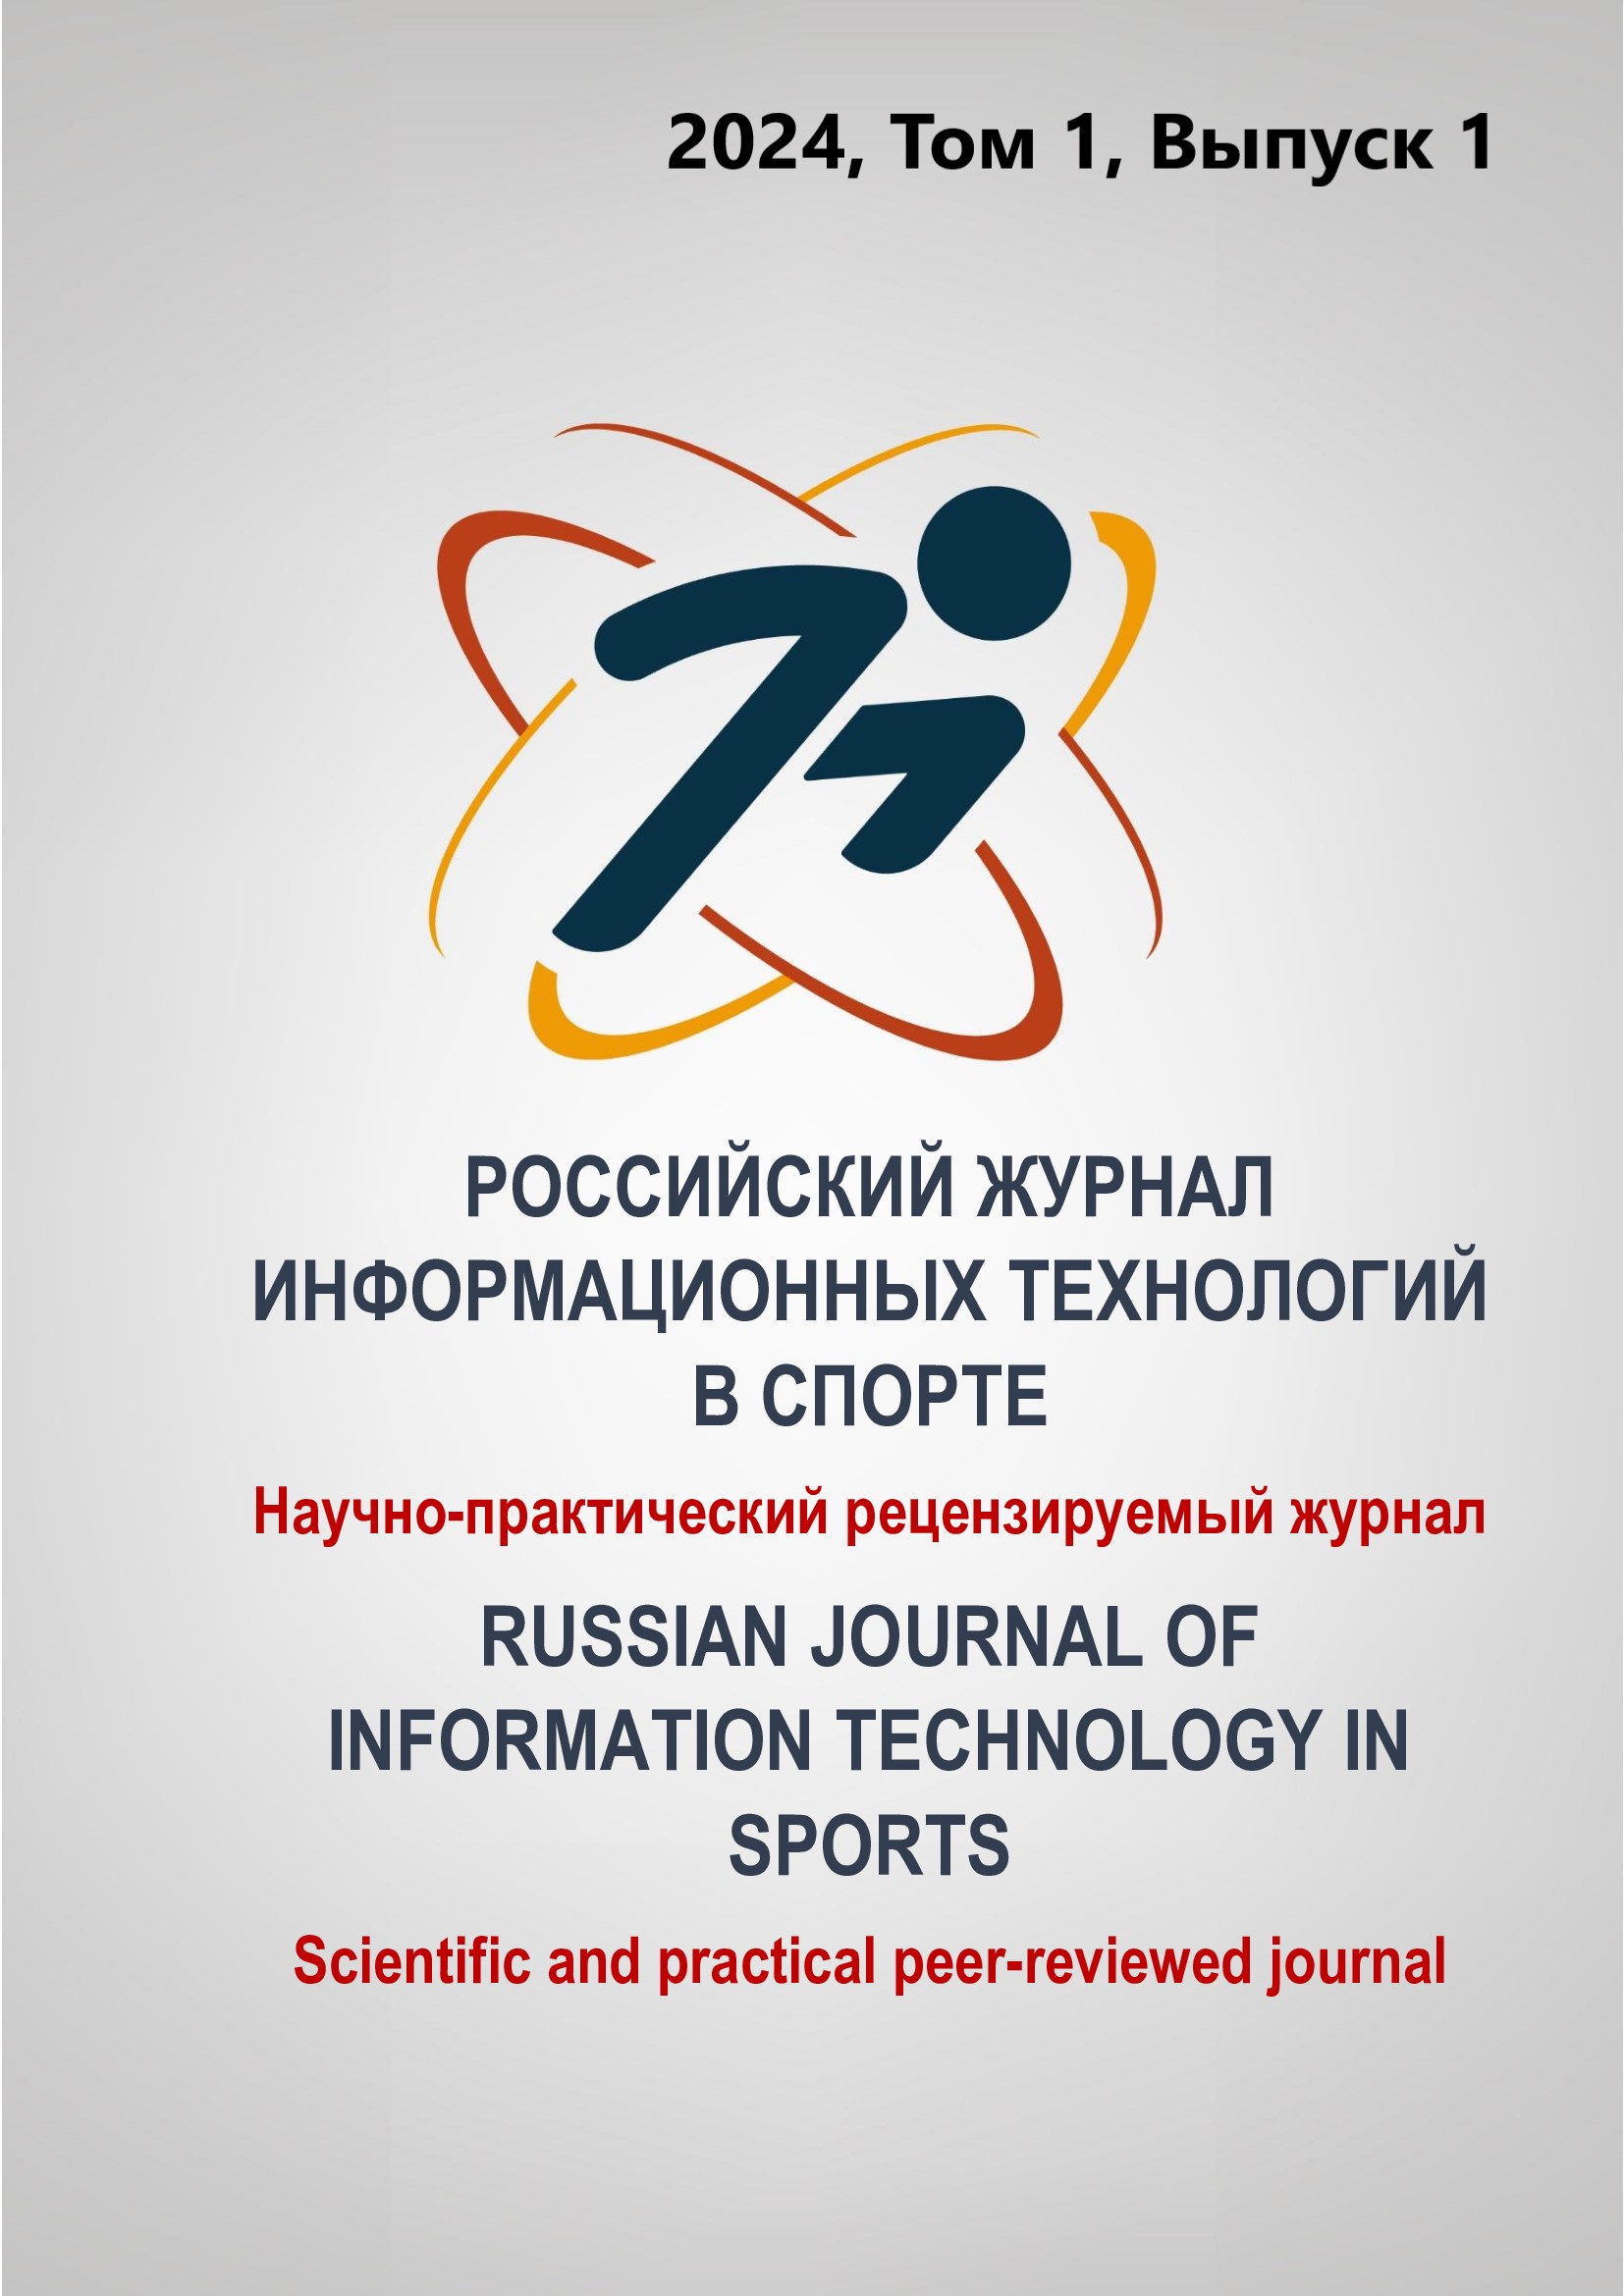             Российский журнал информационных технологий в спорте
    